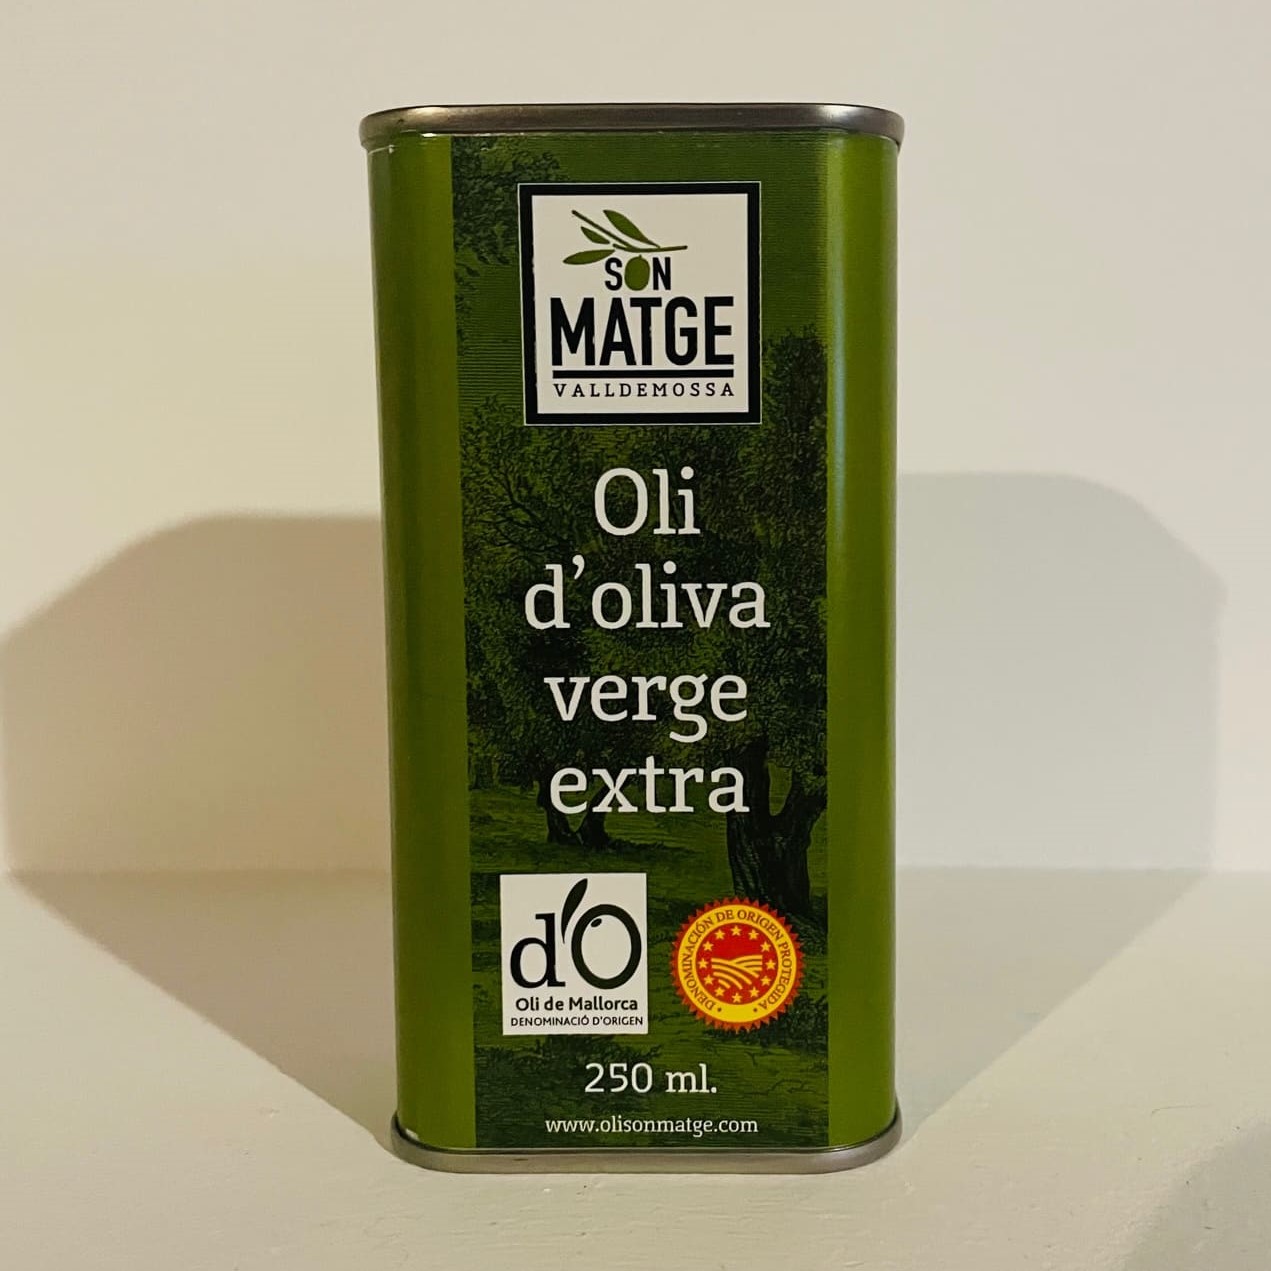 Aceite Son Matge DOP Oli de Mallorca en lata de 250 ml